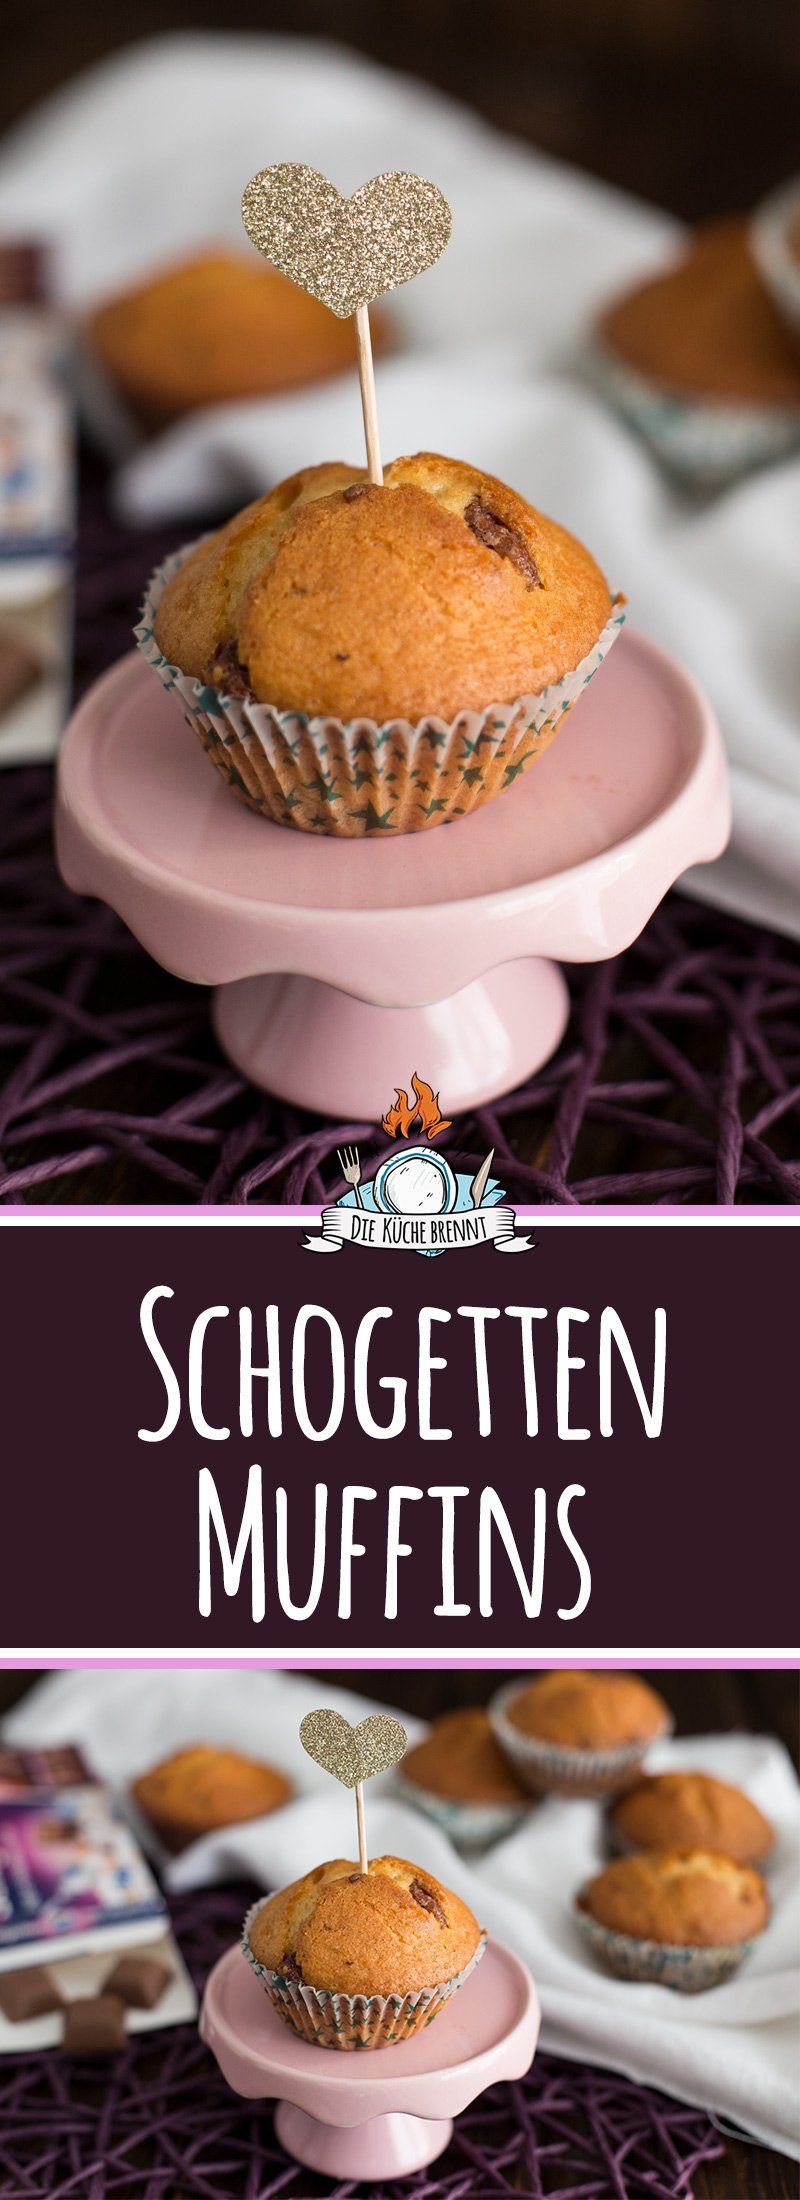 Muffins mit Schokolade - Joghurt-Heidelbeer-Müsli Schogetten